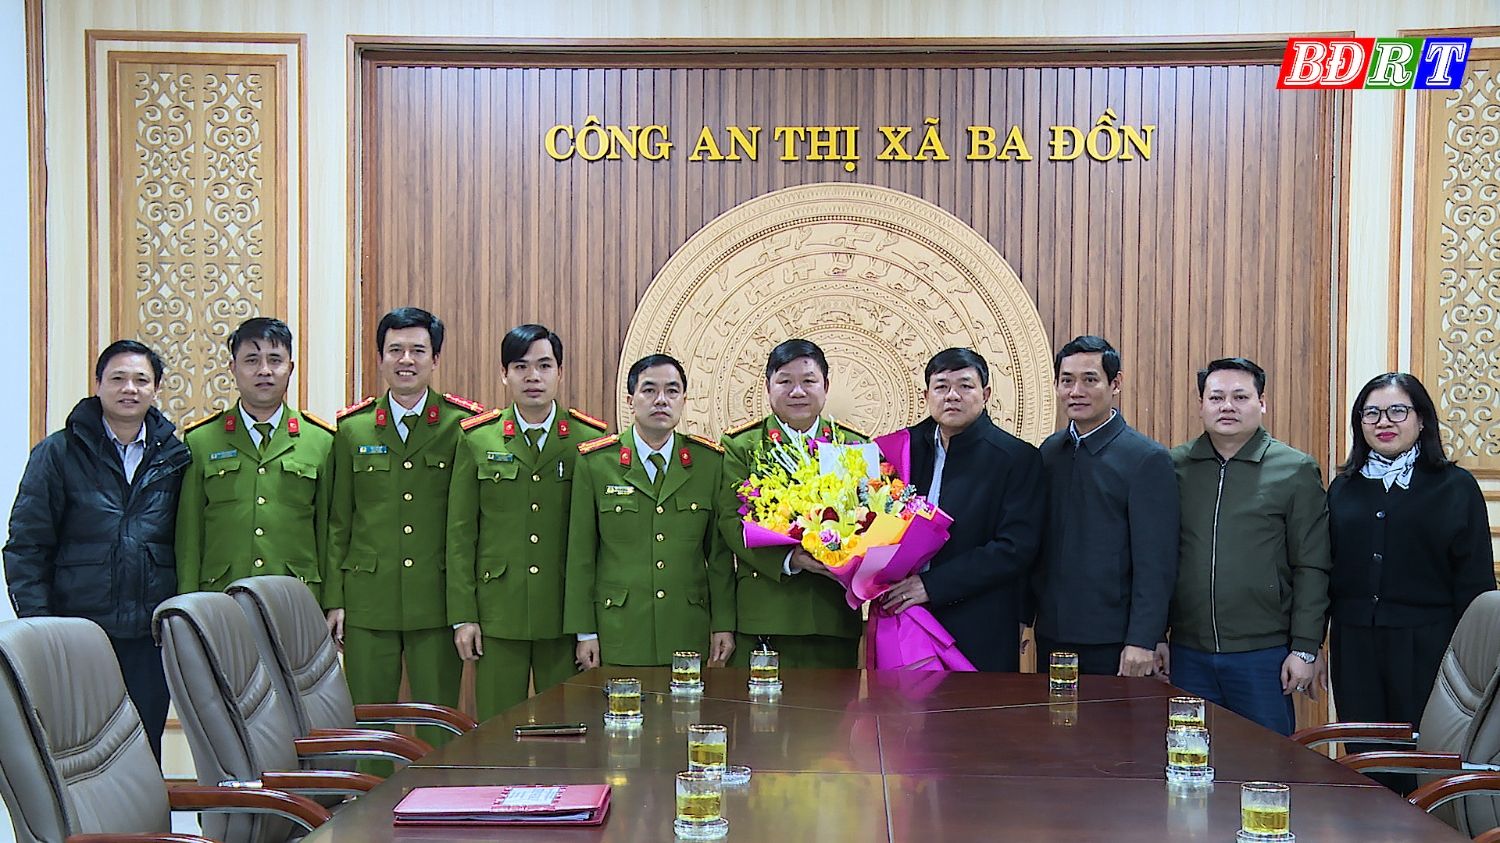 Đồng chí Đoàn Minh Thọ, Phó Bí thư Thị ủy - Chủ tịch UBND thị xã trao thưởng và tặng hoa chúc mừng thành tích xuất sắc chuyên án ma túy 1223M cho lực lượng Công an thị xã Ba Đồn